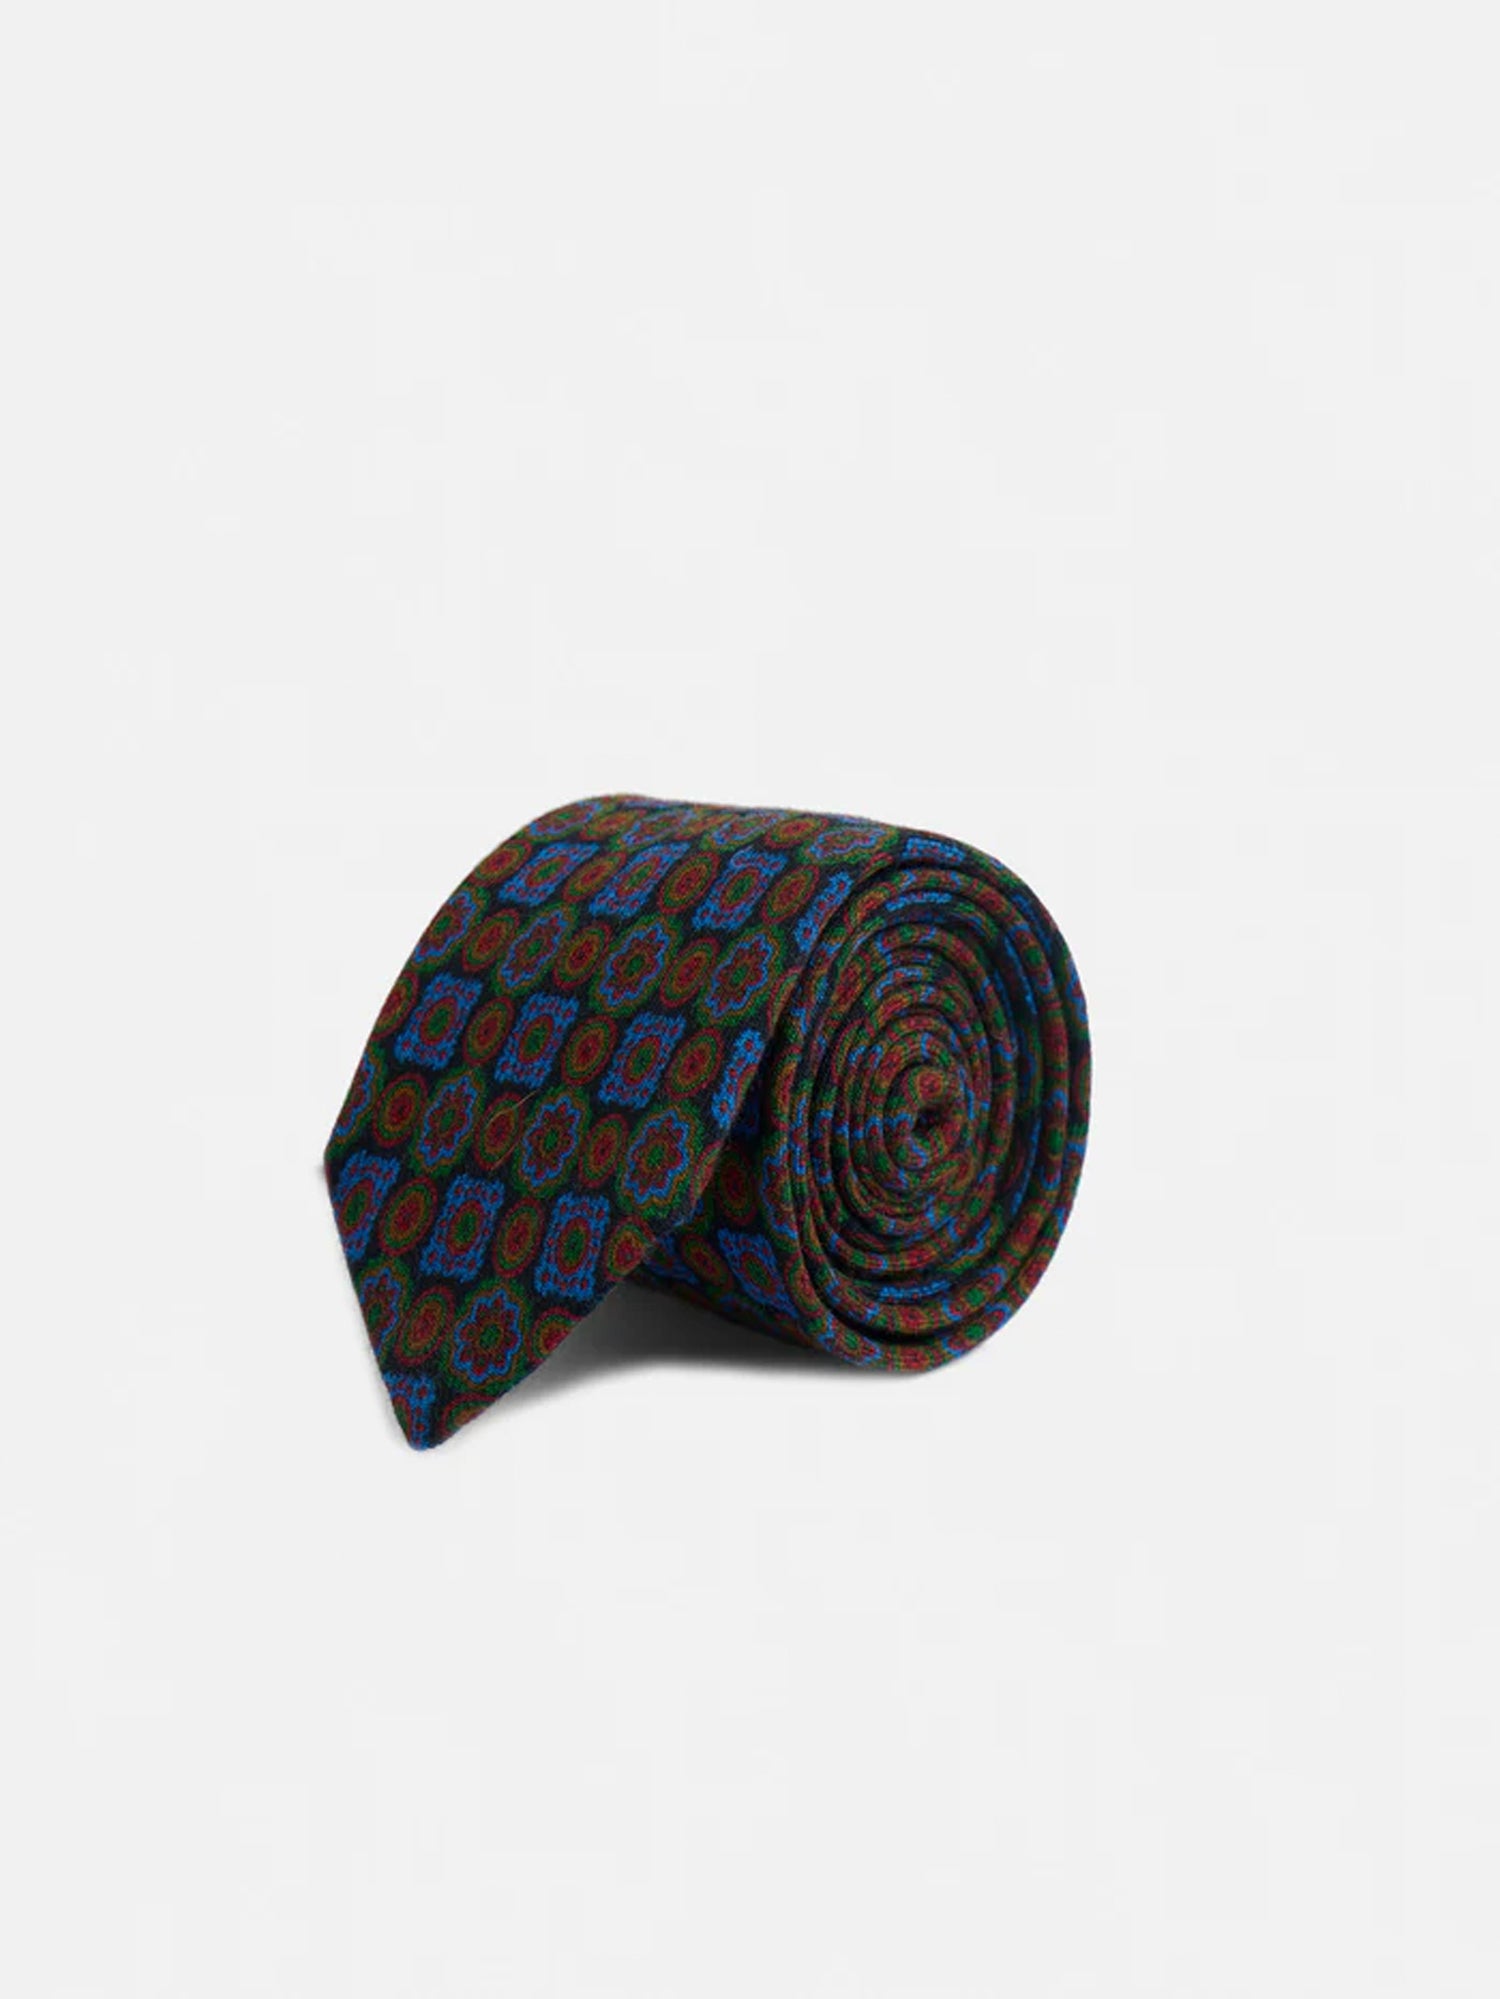 Cravate géométrique bleu marine